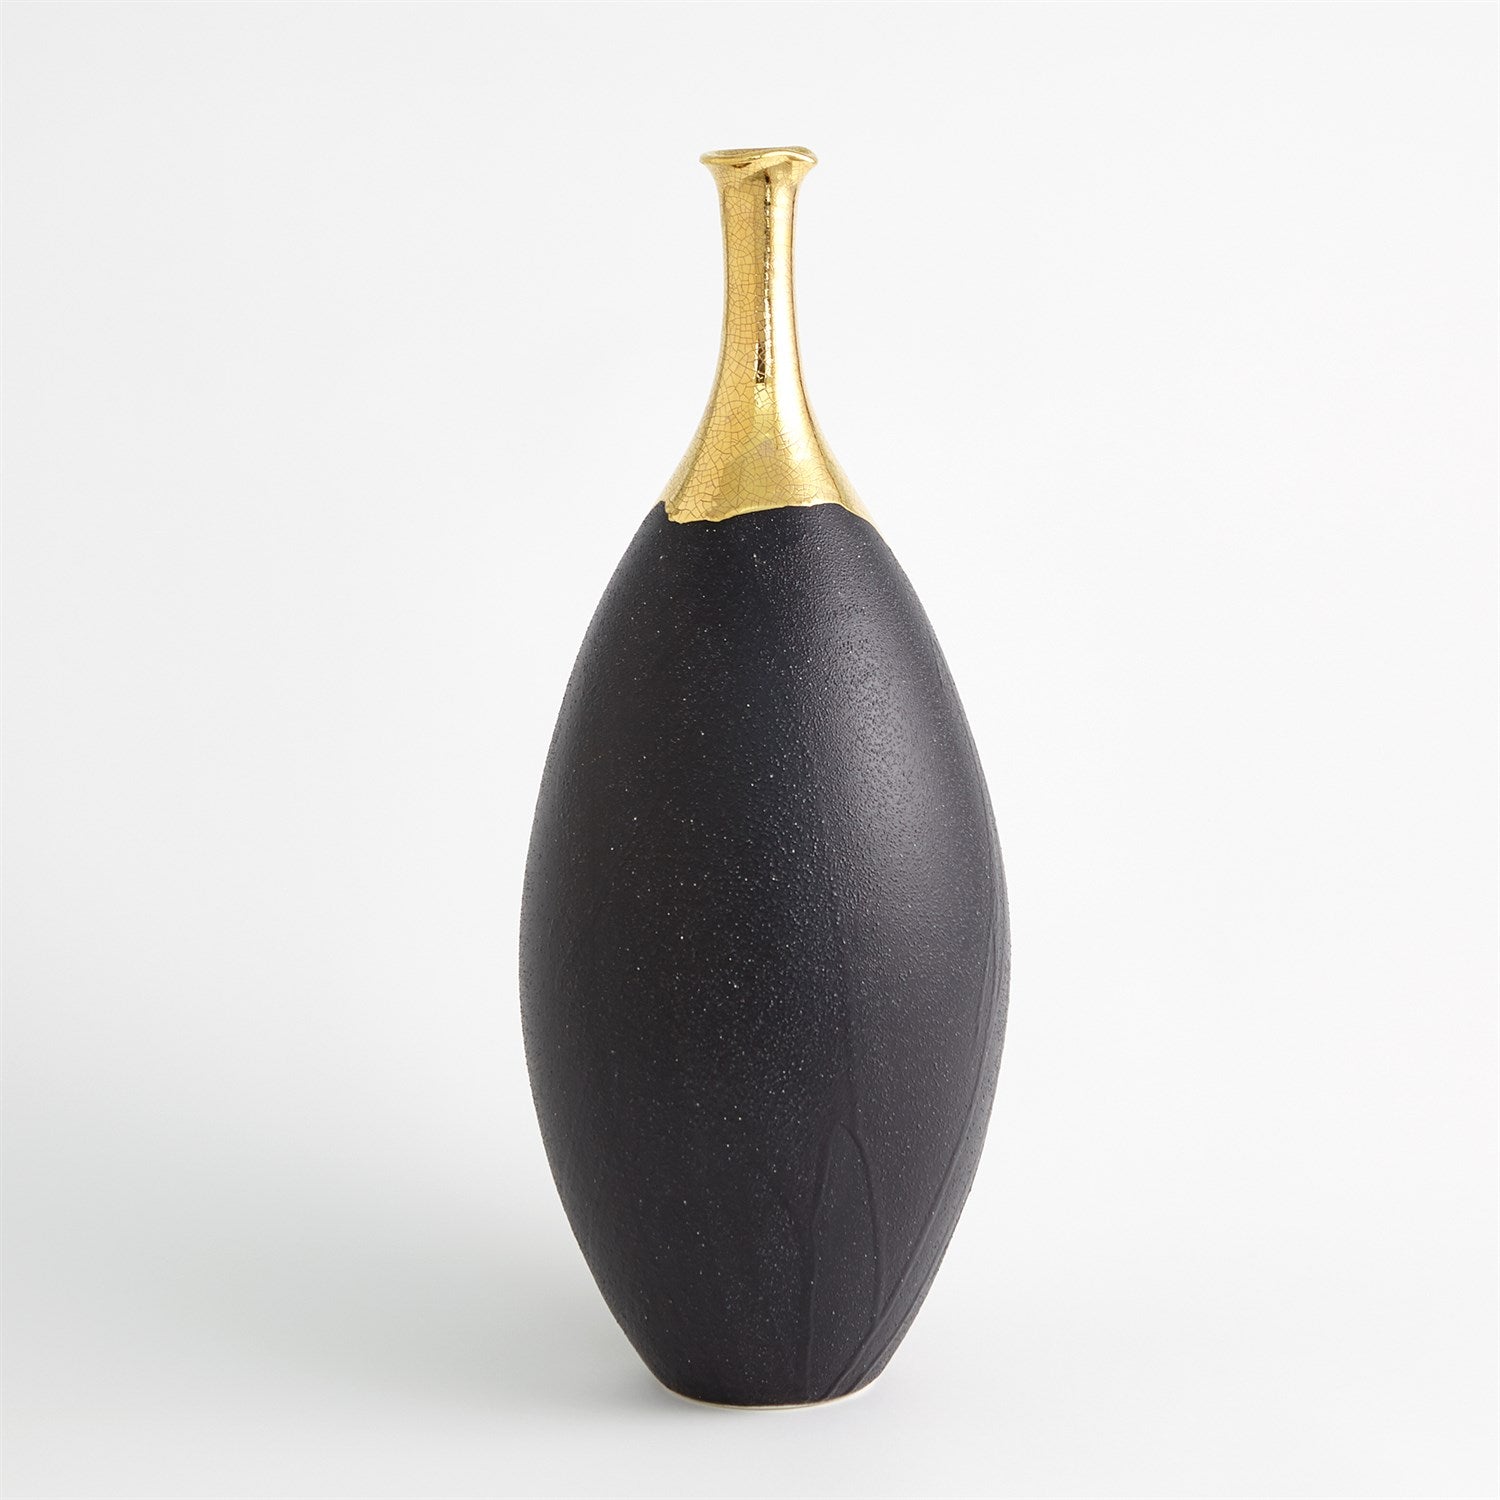 Dipped Golden Crackle/Black Slender Vase